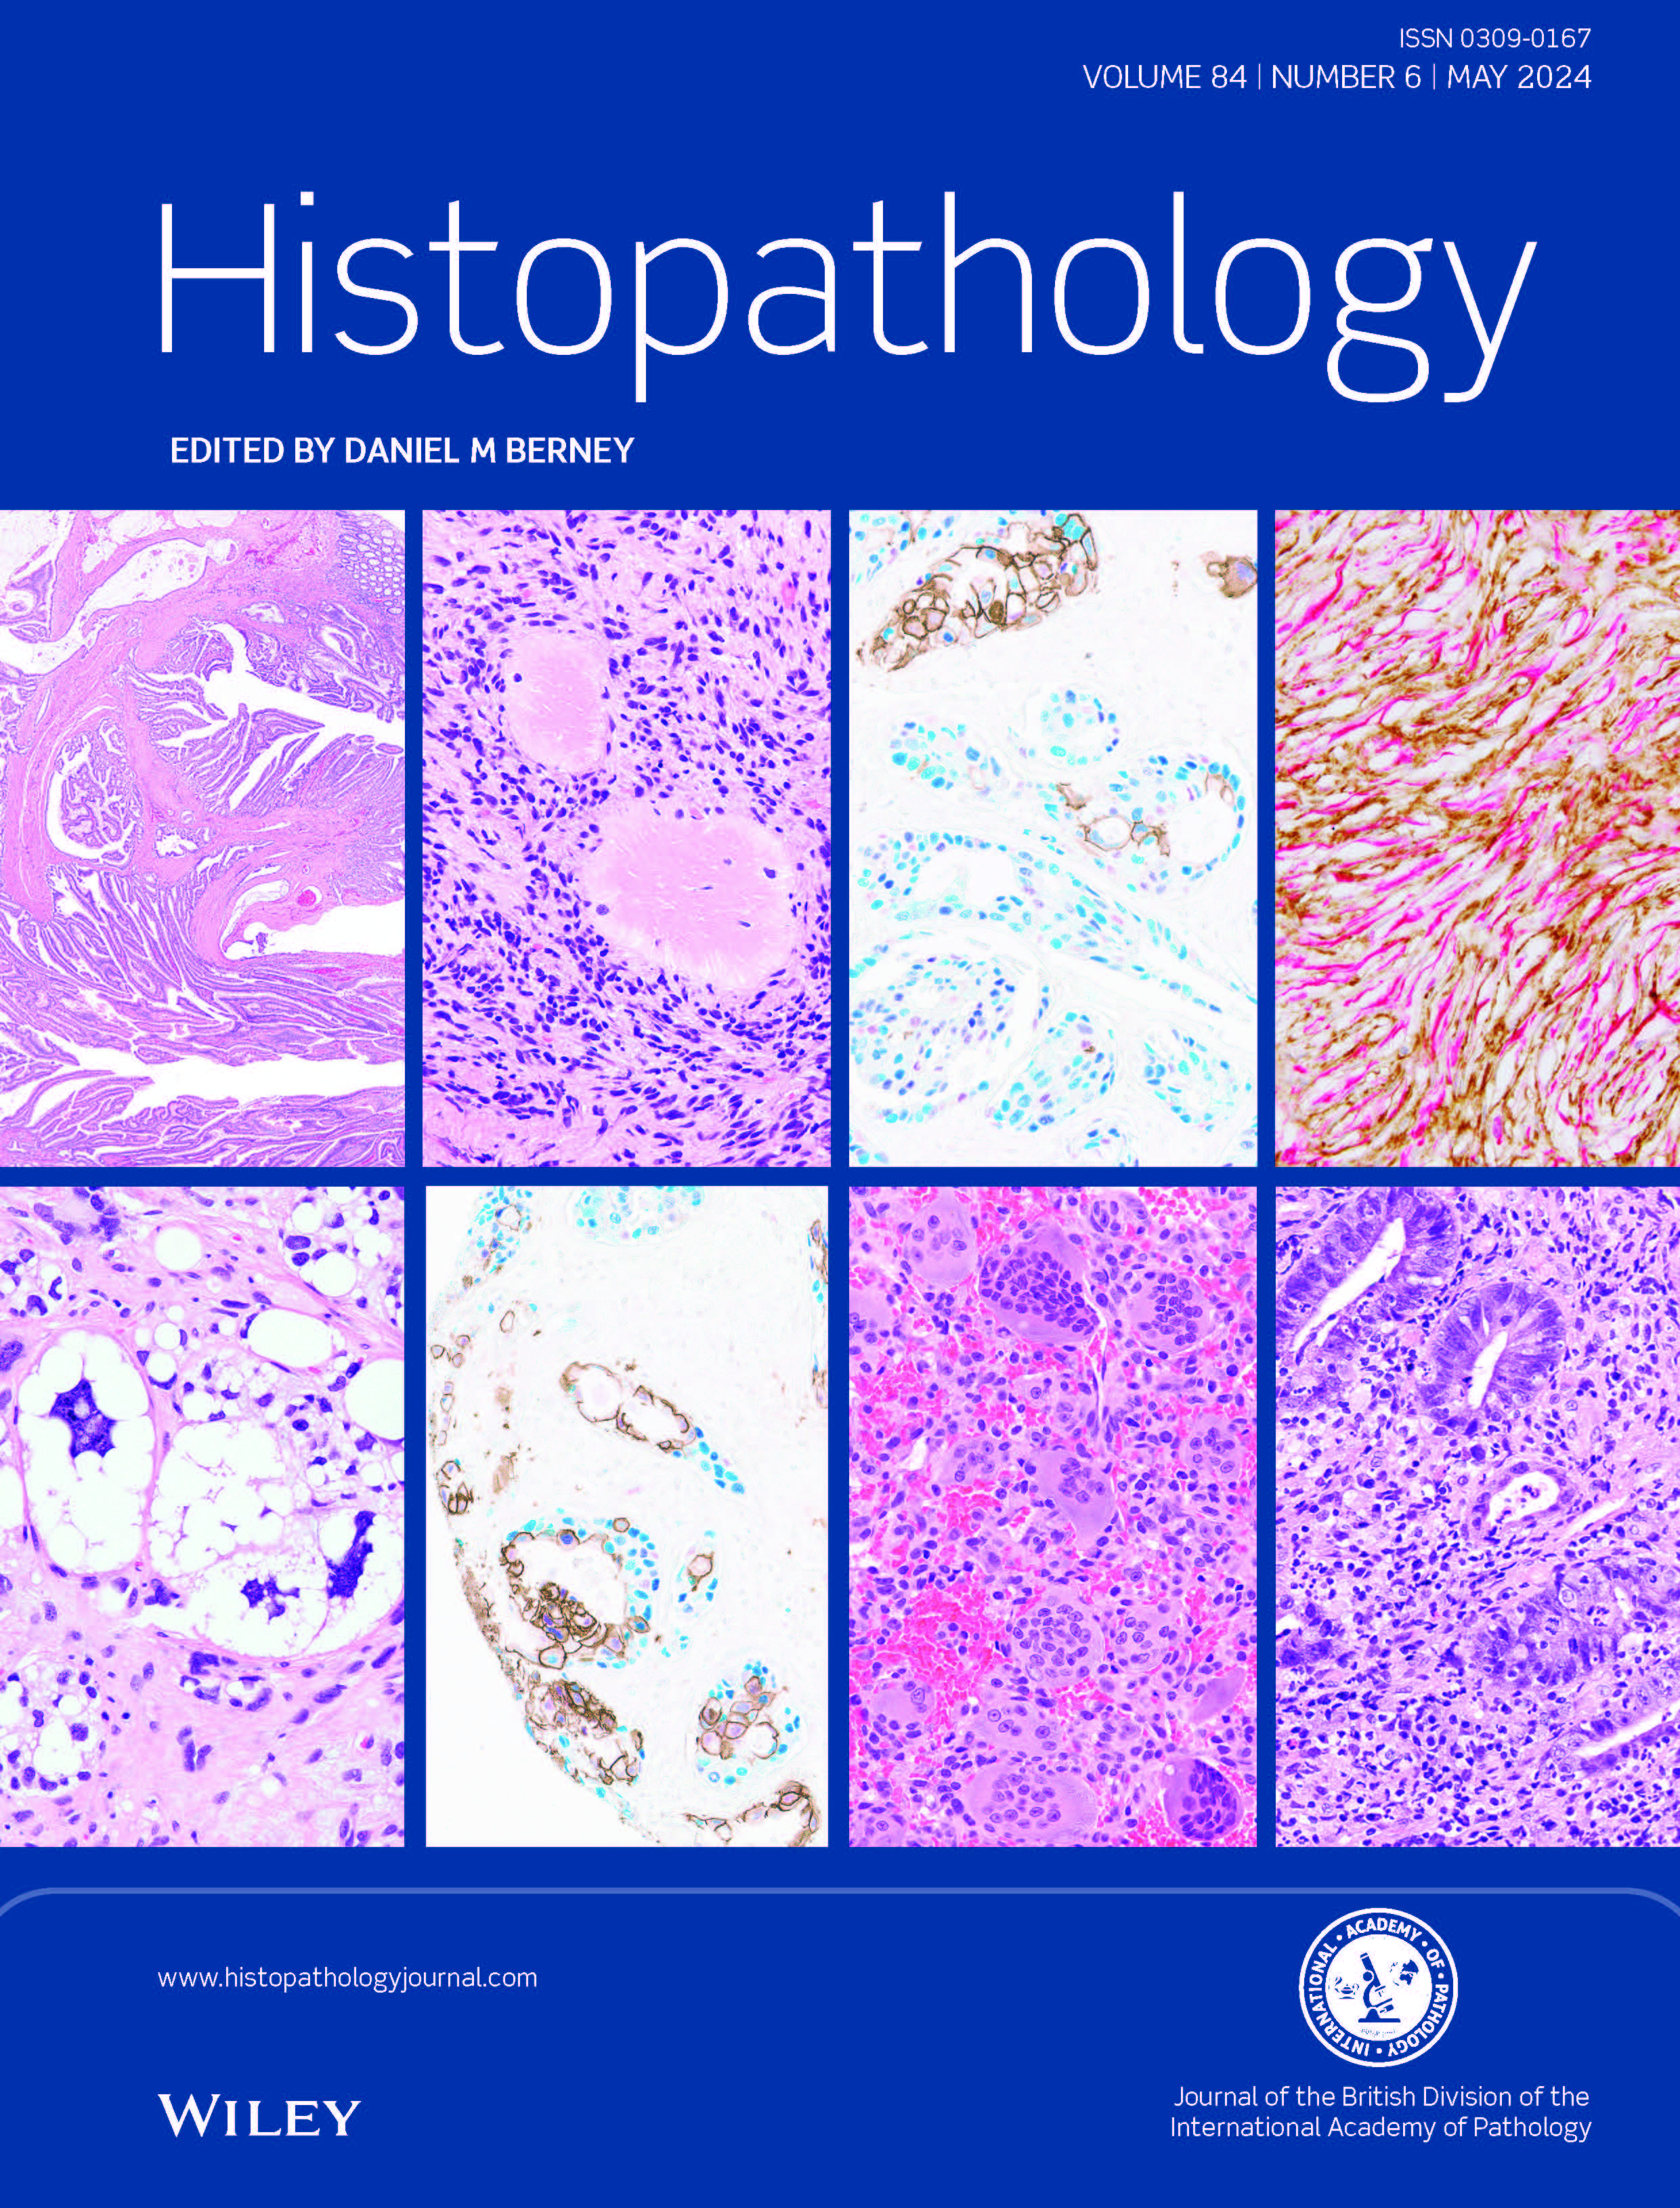 Histopathology Journal May 2024